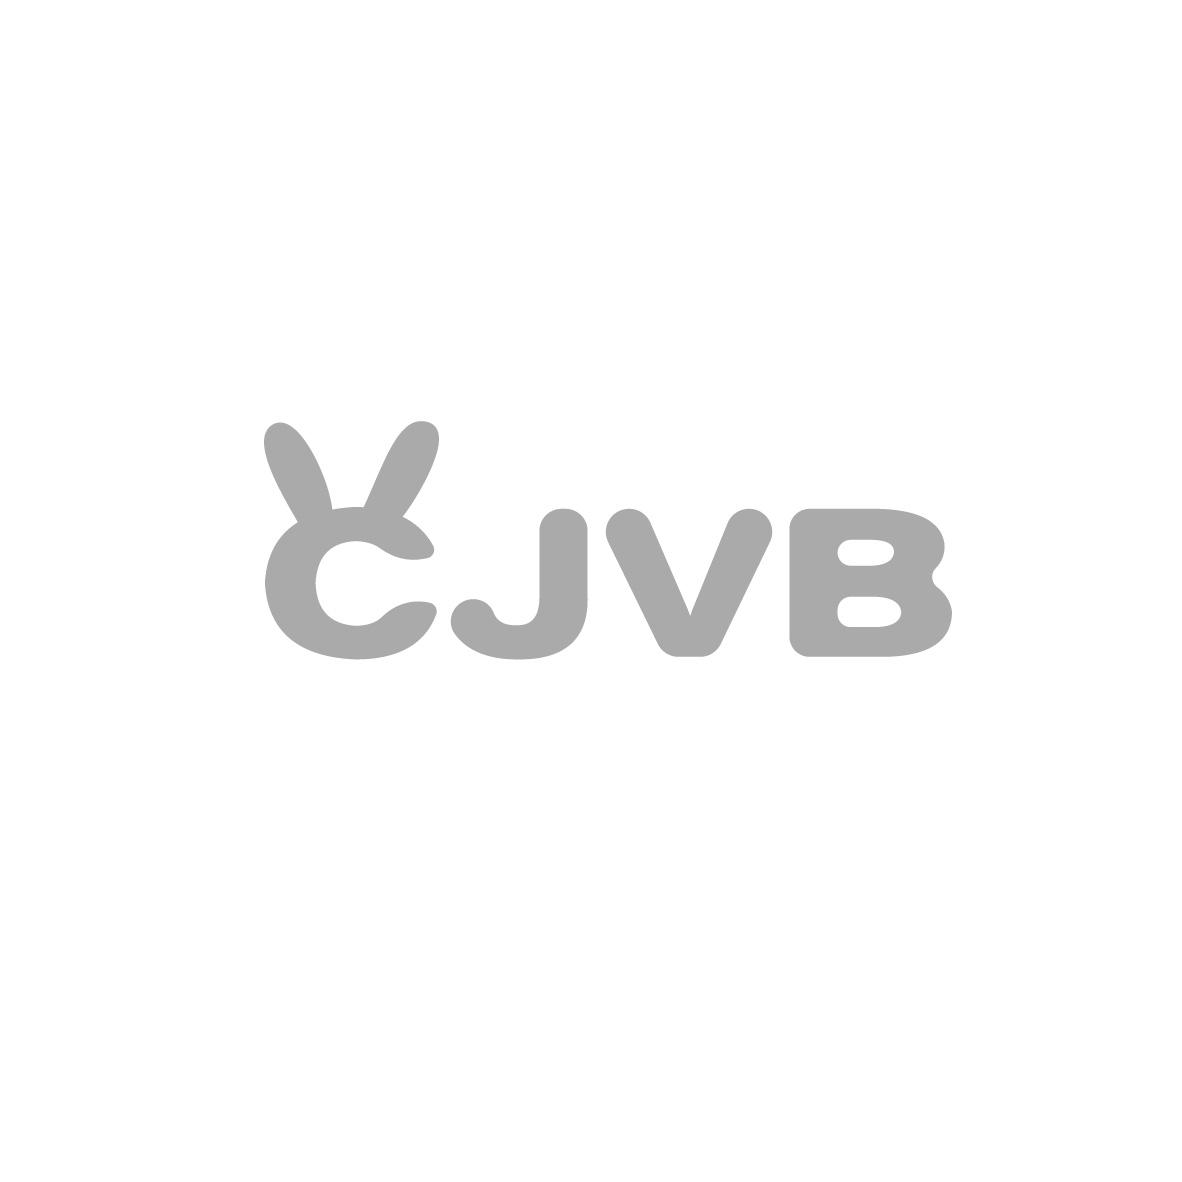 12类-运输装置CJVB商标转让